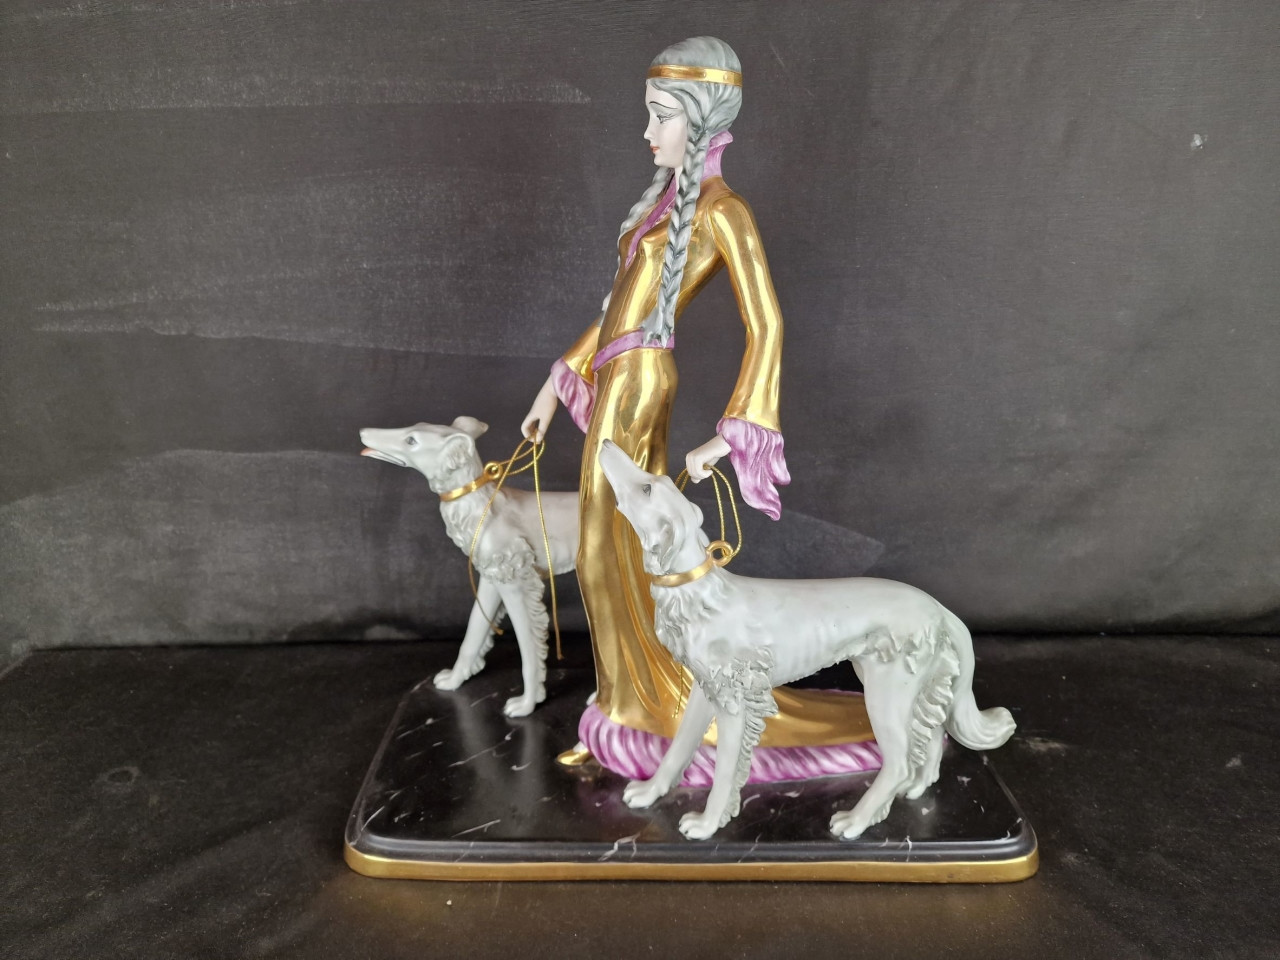 Elegante Signora, porcellana di Capodimonte - Antichità Ioviero